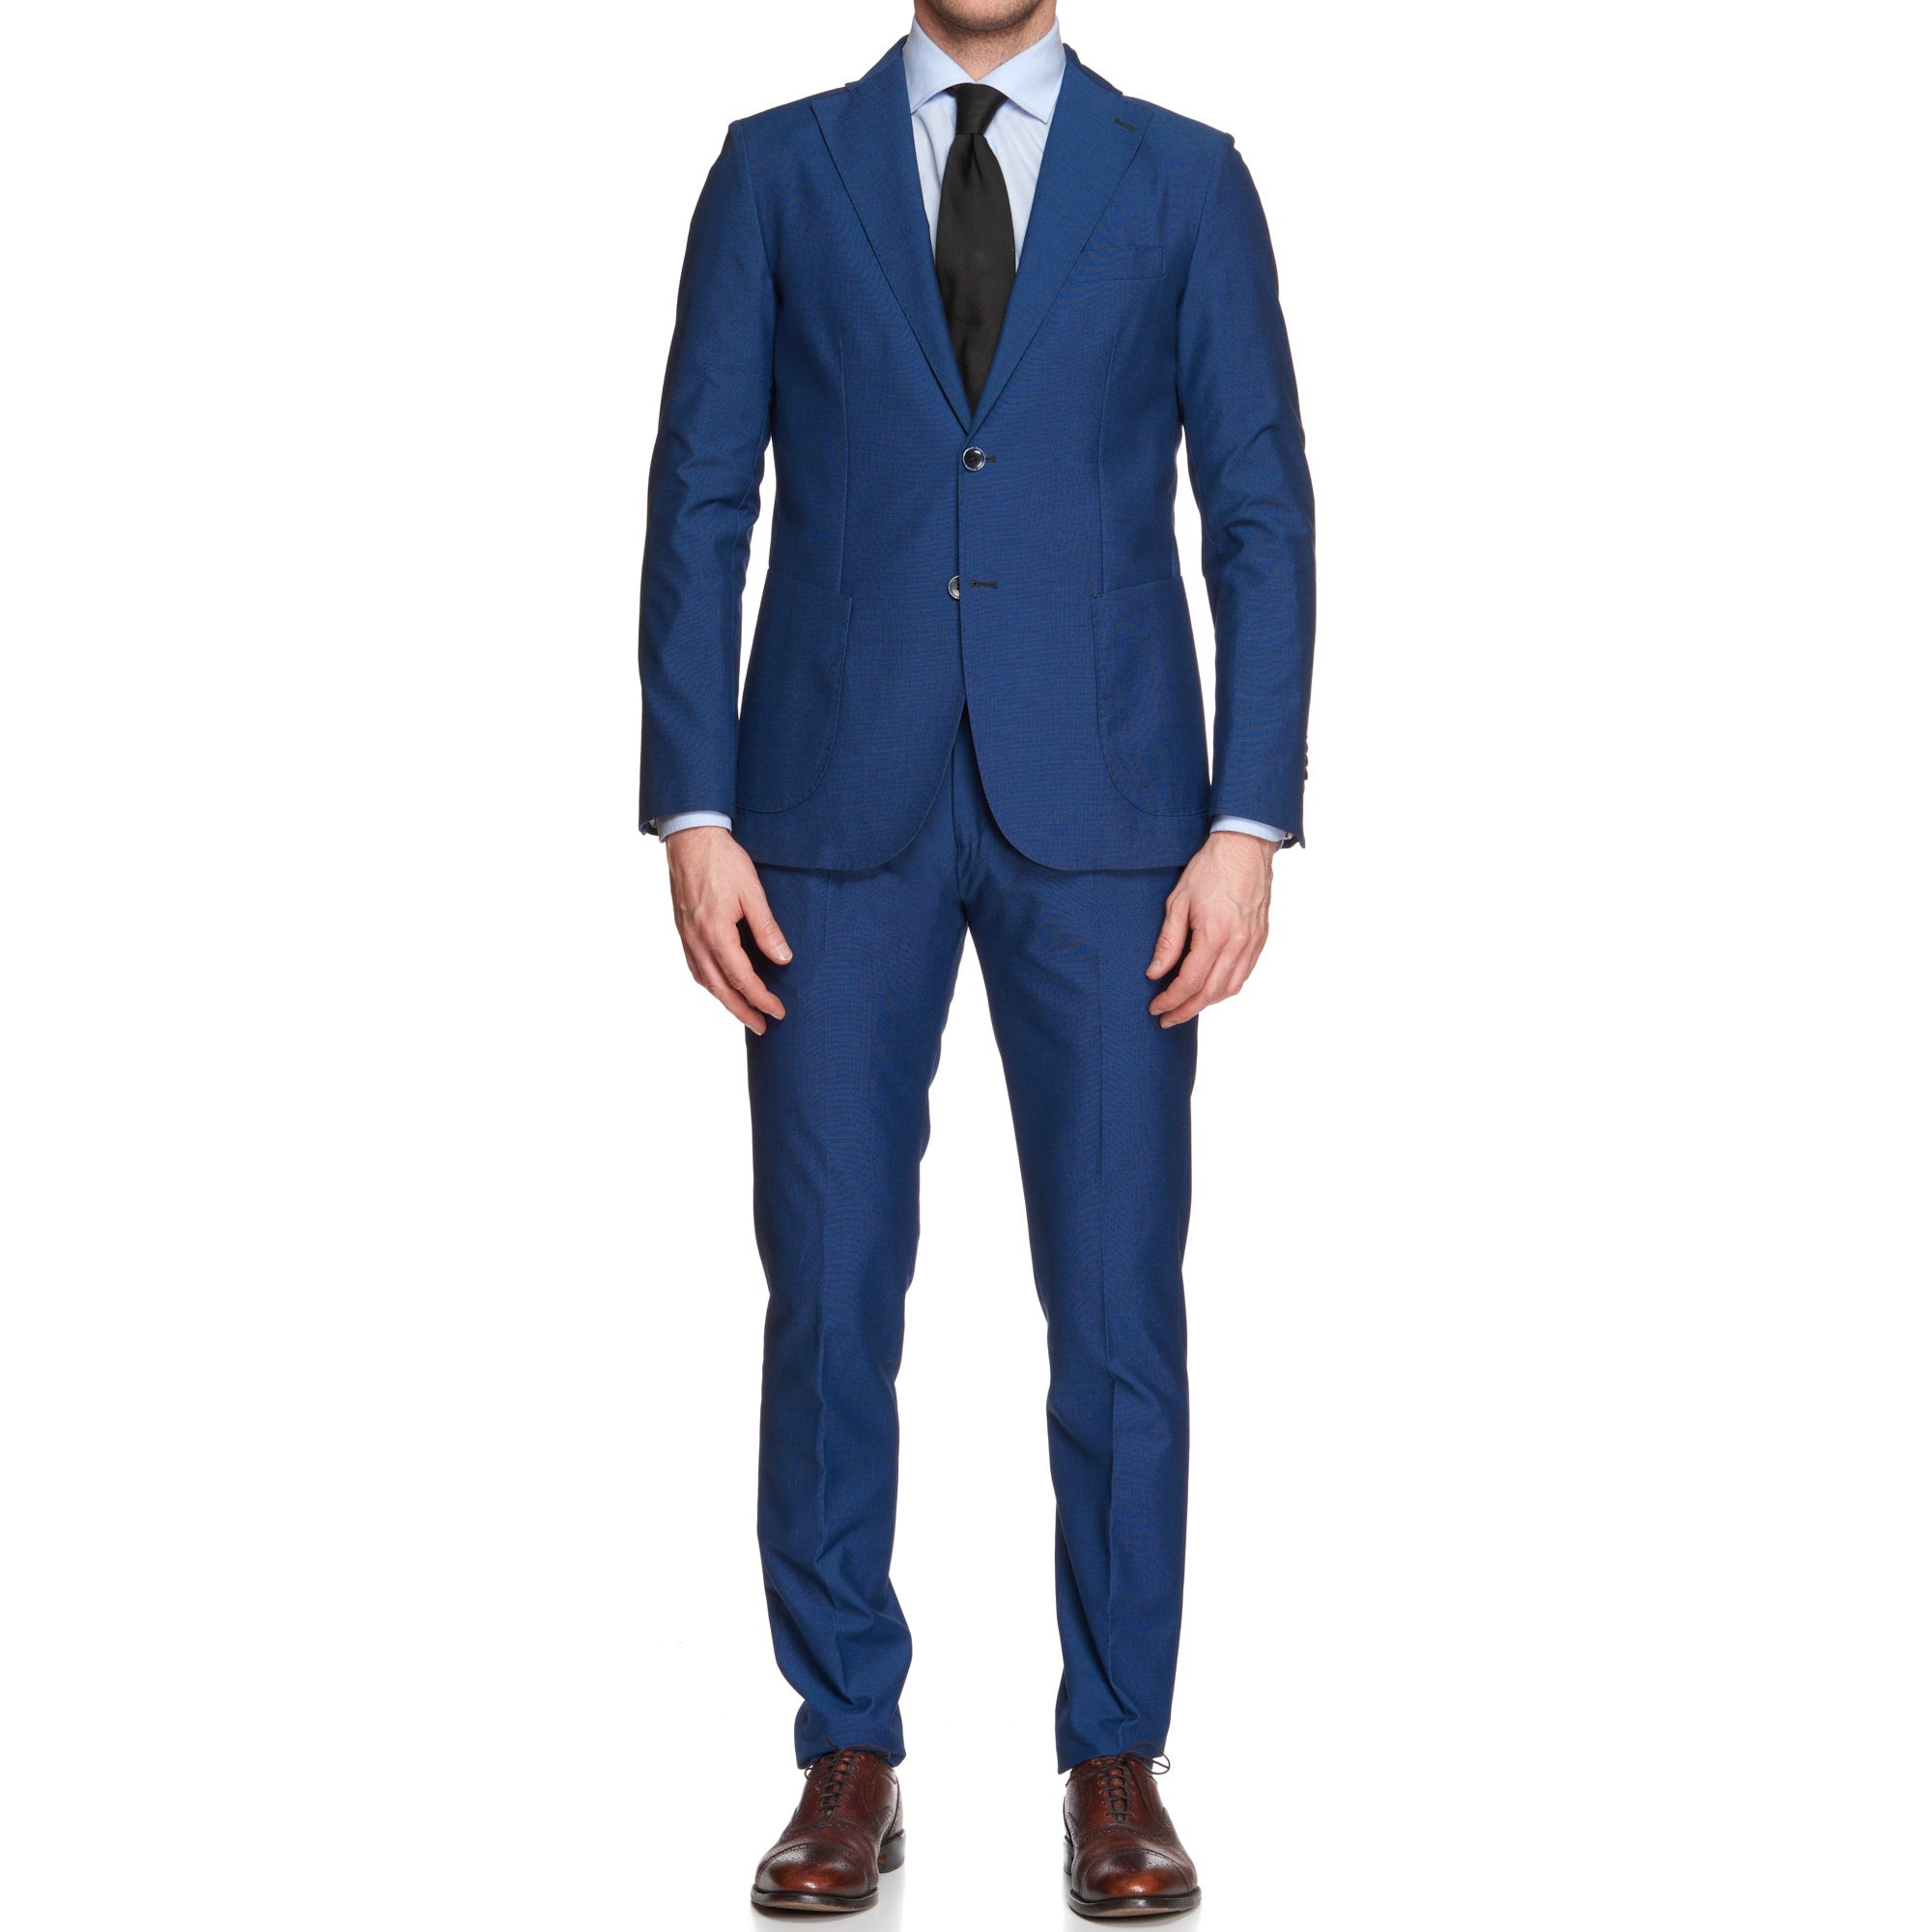 VINCENZO PALUMBO Napoli Blue Birdseye Wool Suit NEW